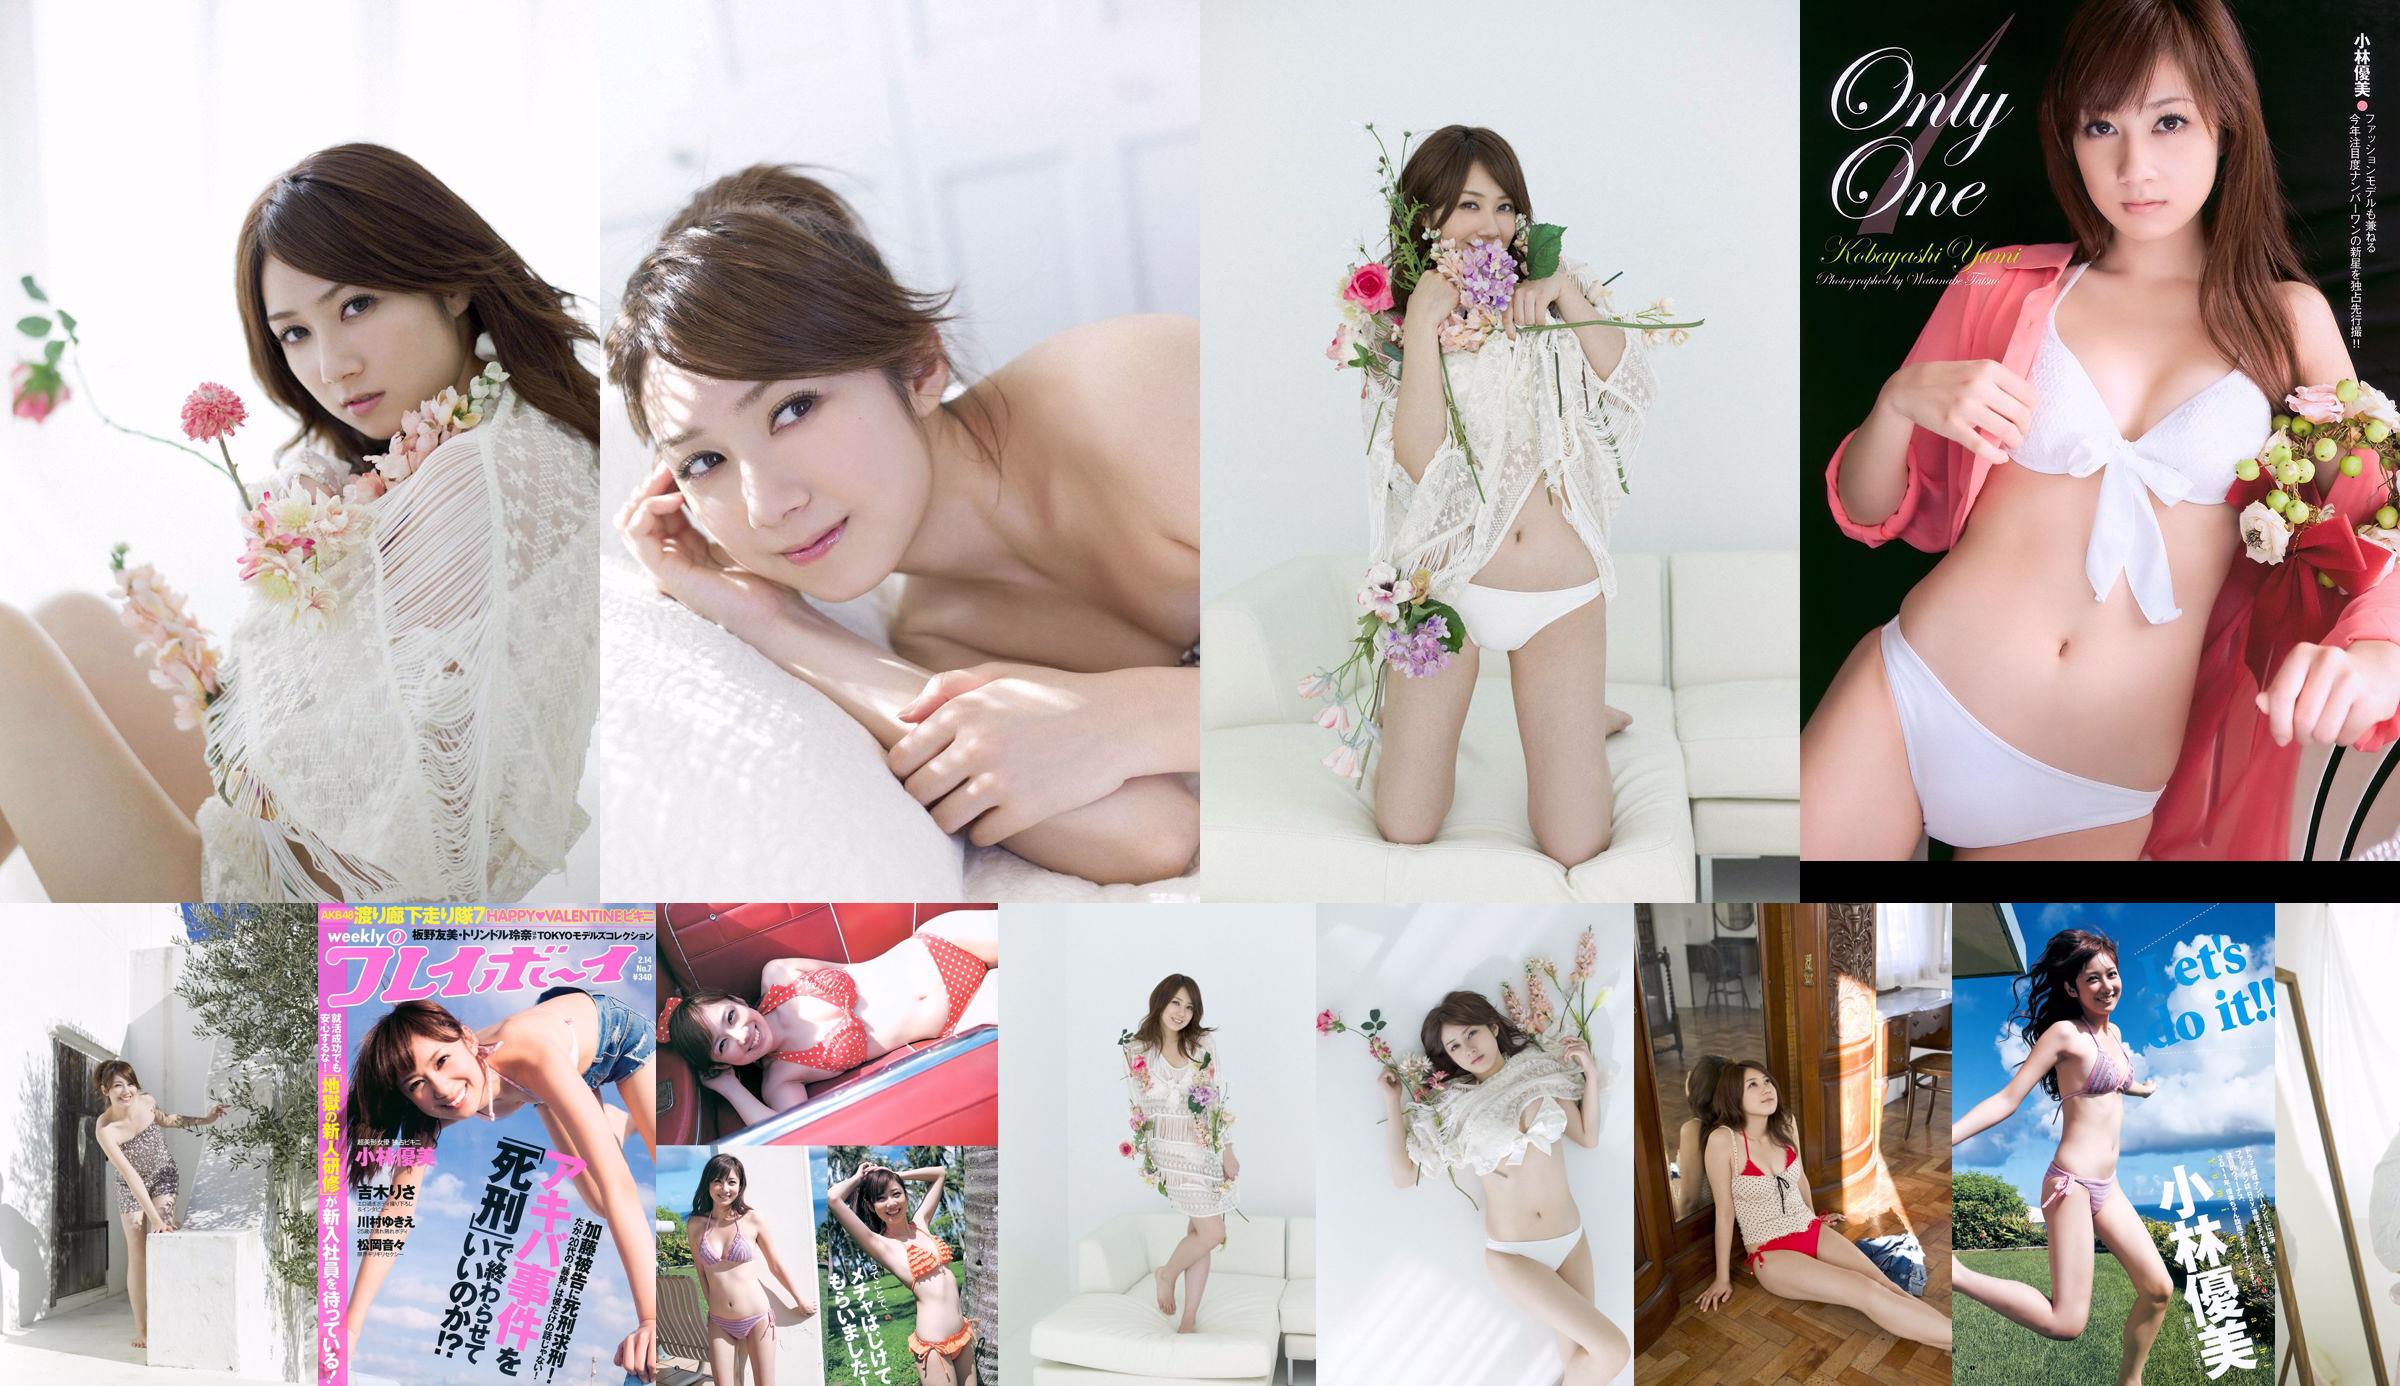 Kobayashi Yumi Shinoda Mariko [Wekelijkse Young Jump] 2011 No.11 Photo Magazine No.3df351 Pagina 2